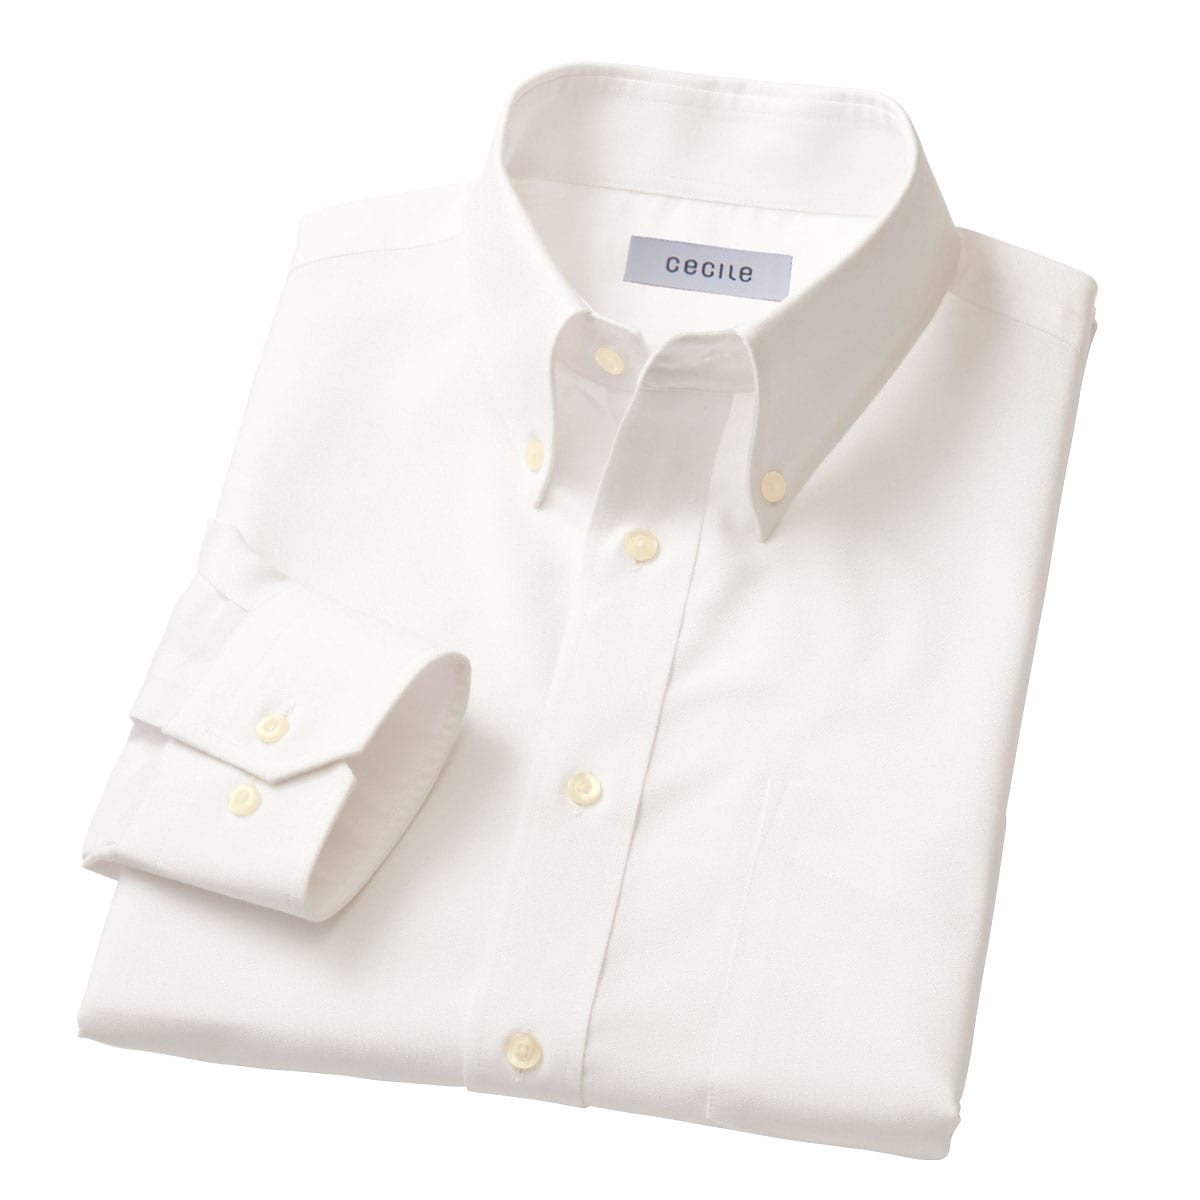 形態安定ボタンダウンYシャツ(長袖) - ファッション通販ならセシール(cecile)